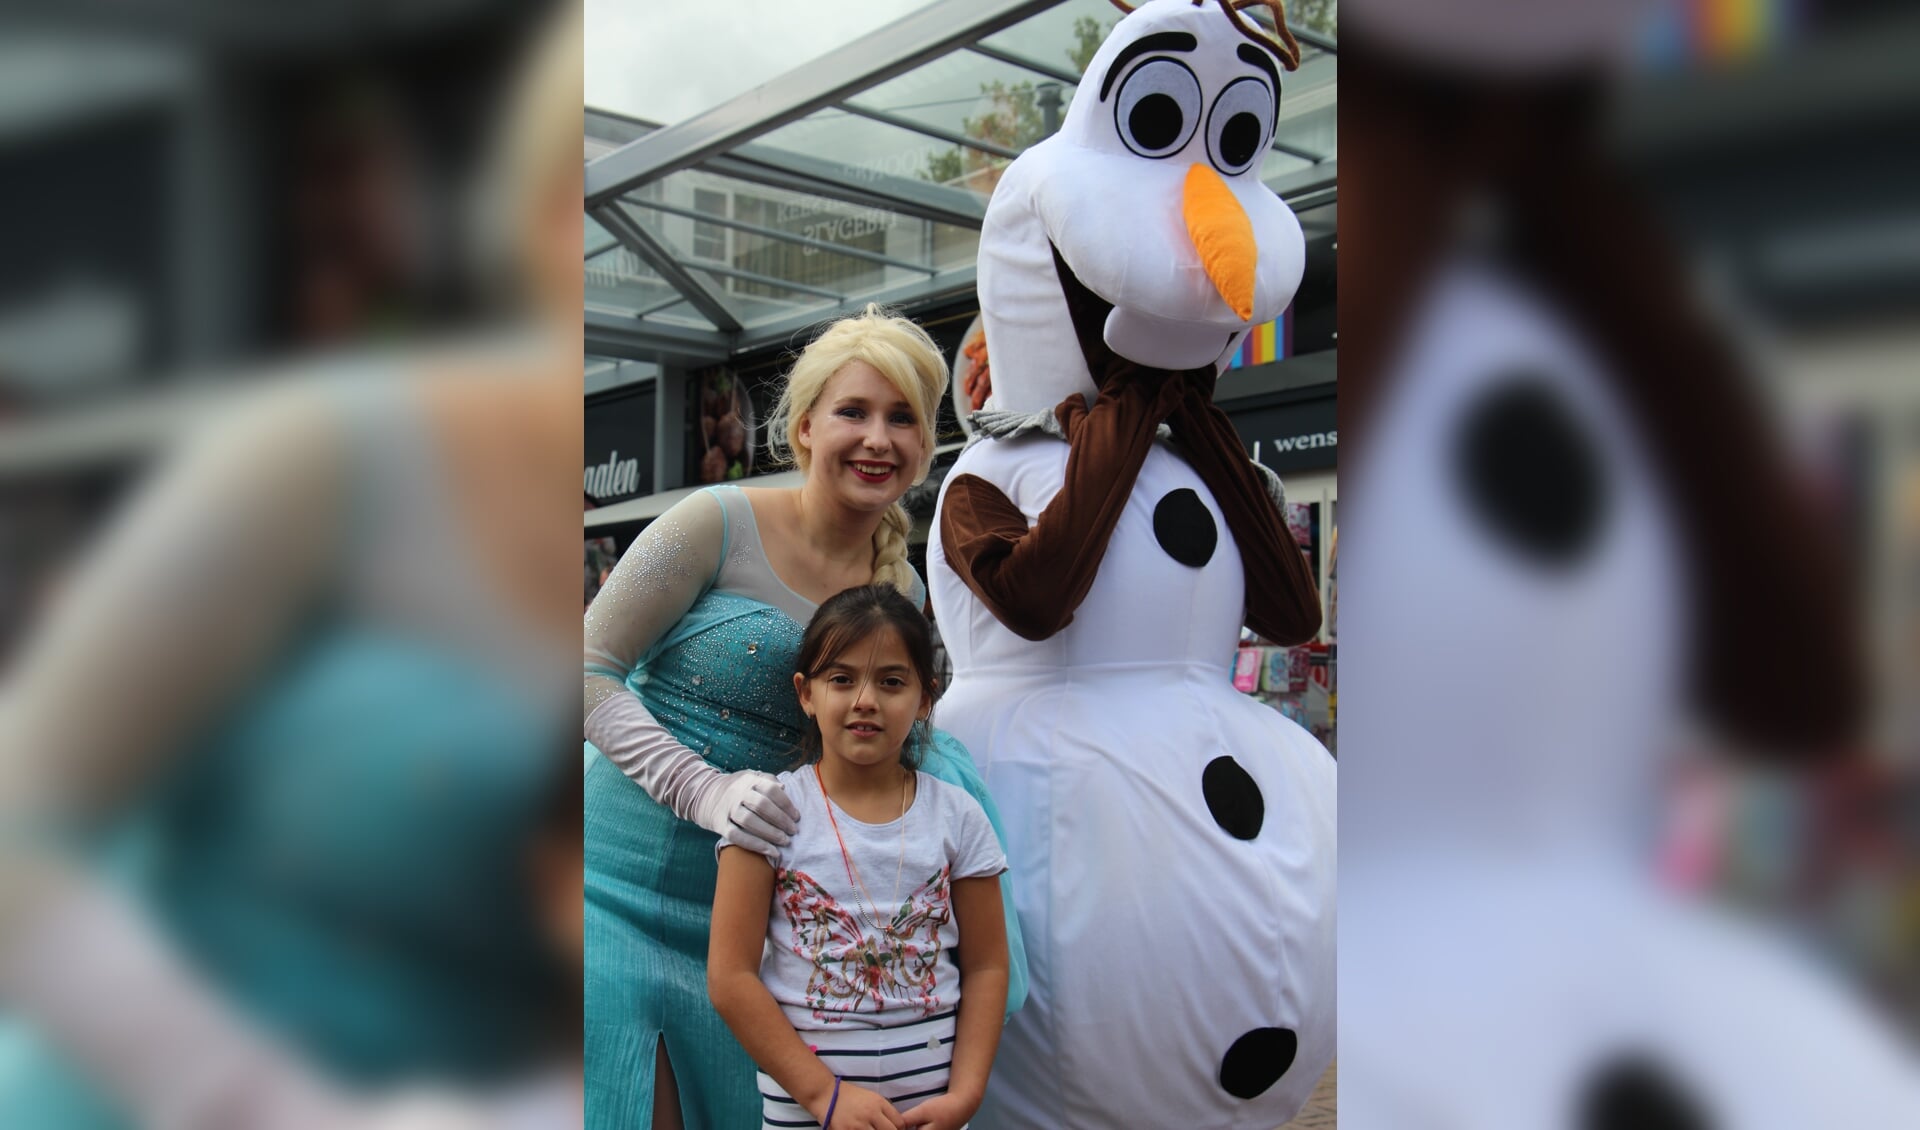 De hoofdrolspelers uit Frozen zijn 6 oktober te zien in Makado.